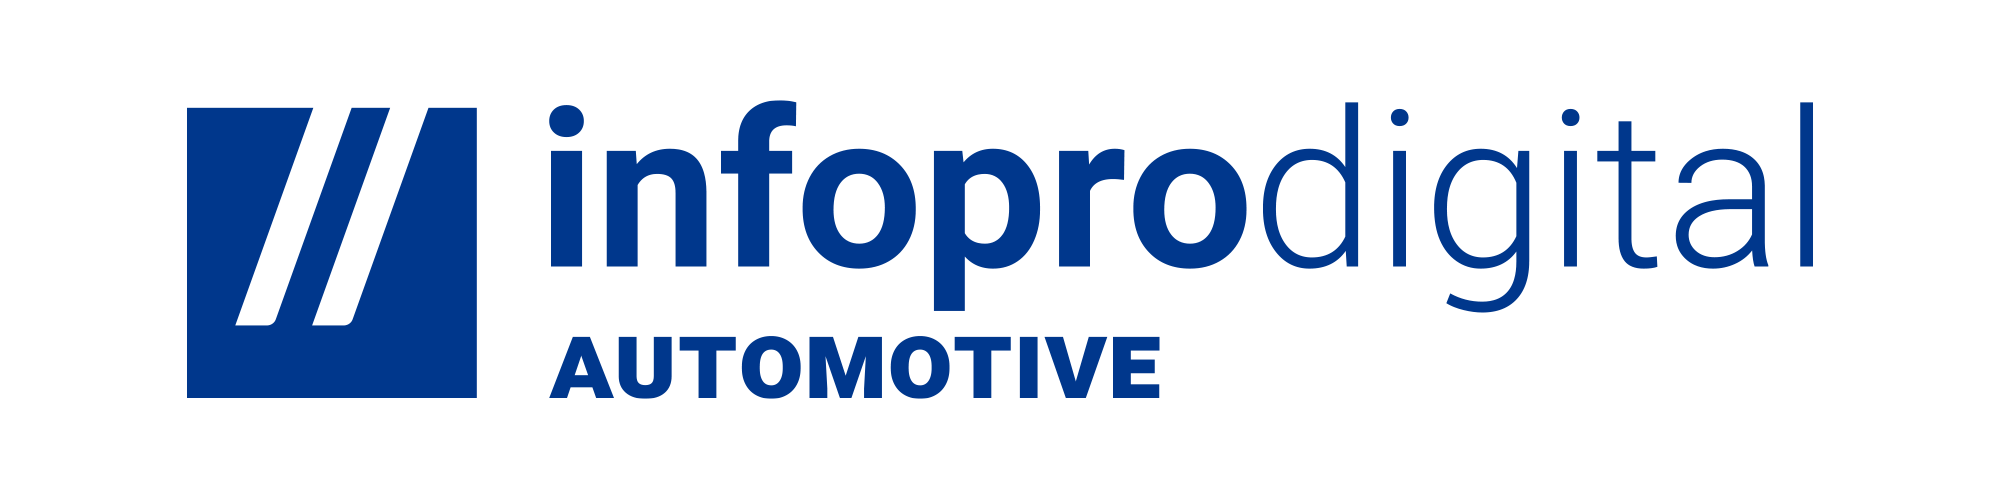 logo infopro digital automotive